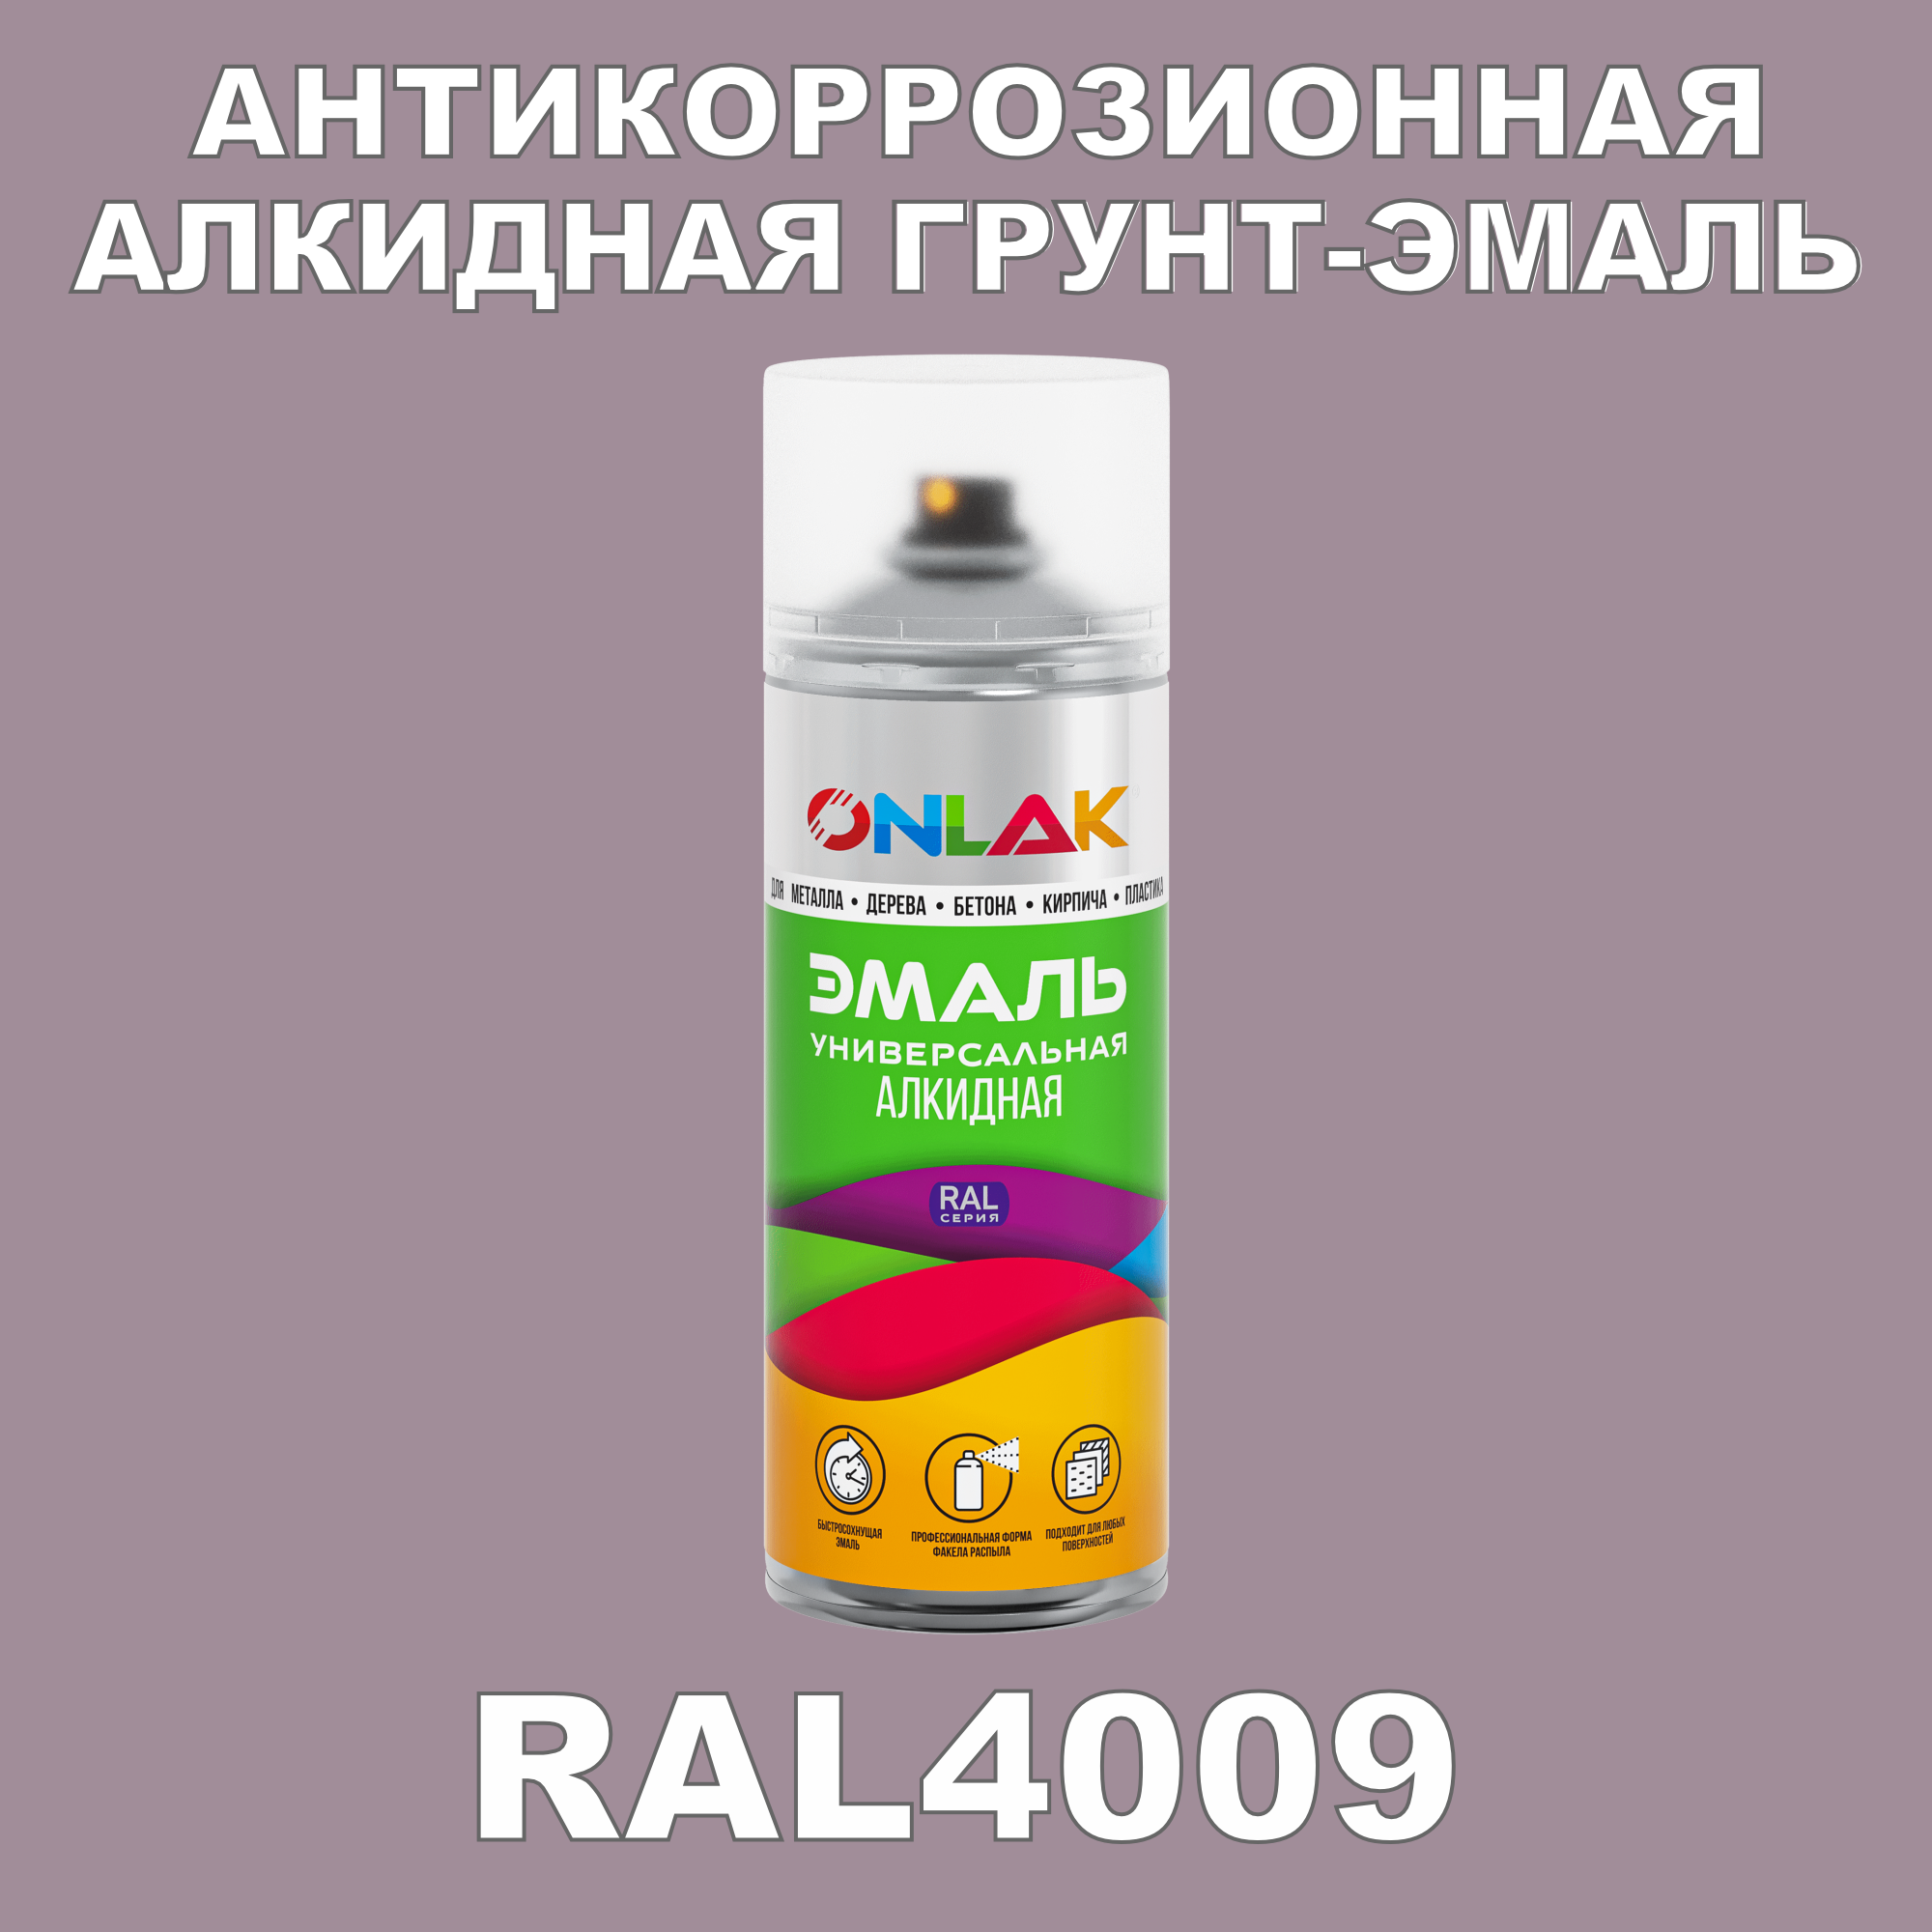 Антикоррозионная грунт-эмаль ONLAK RAL 4009,фиолетовый,593 мл